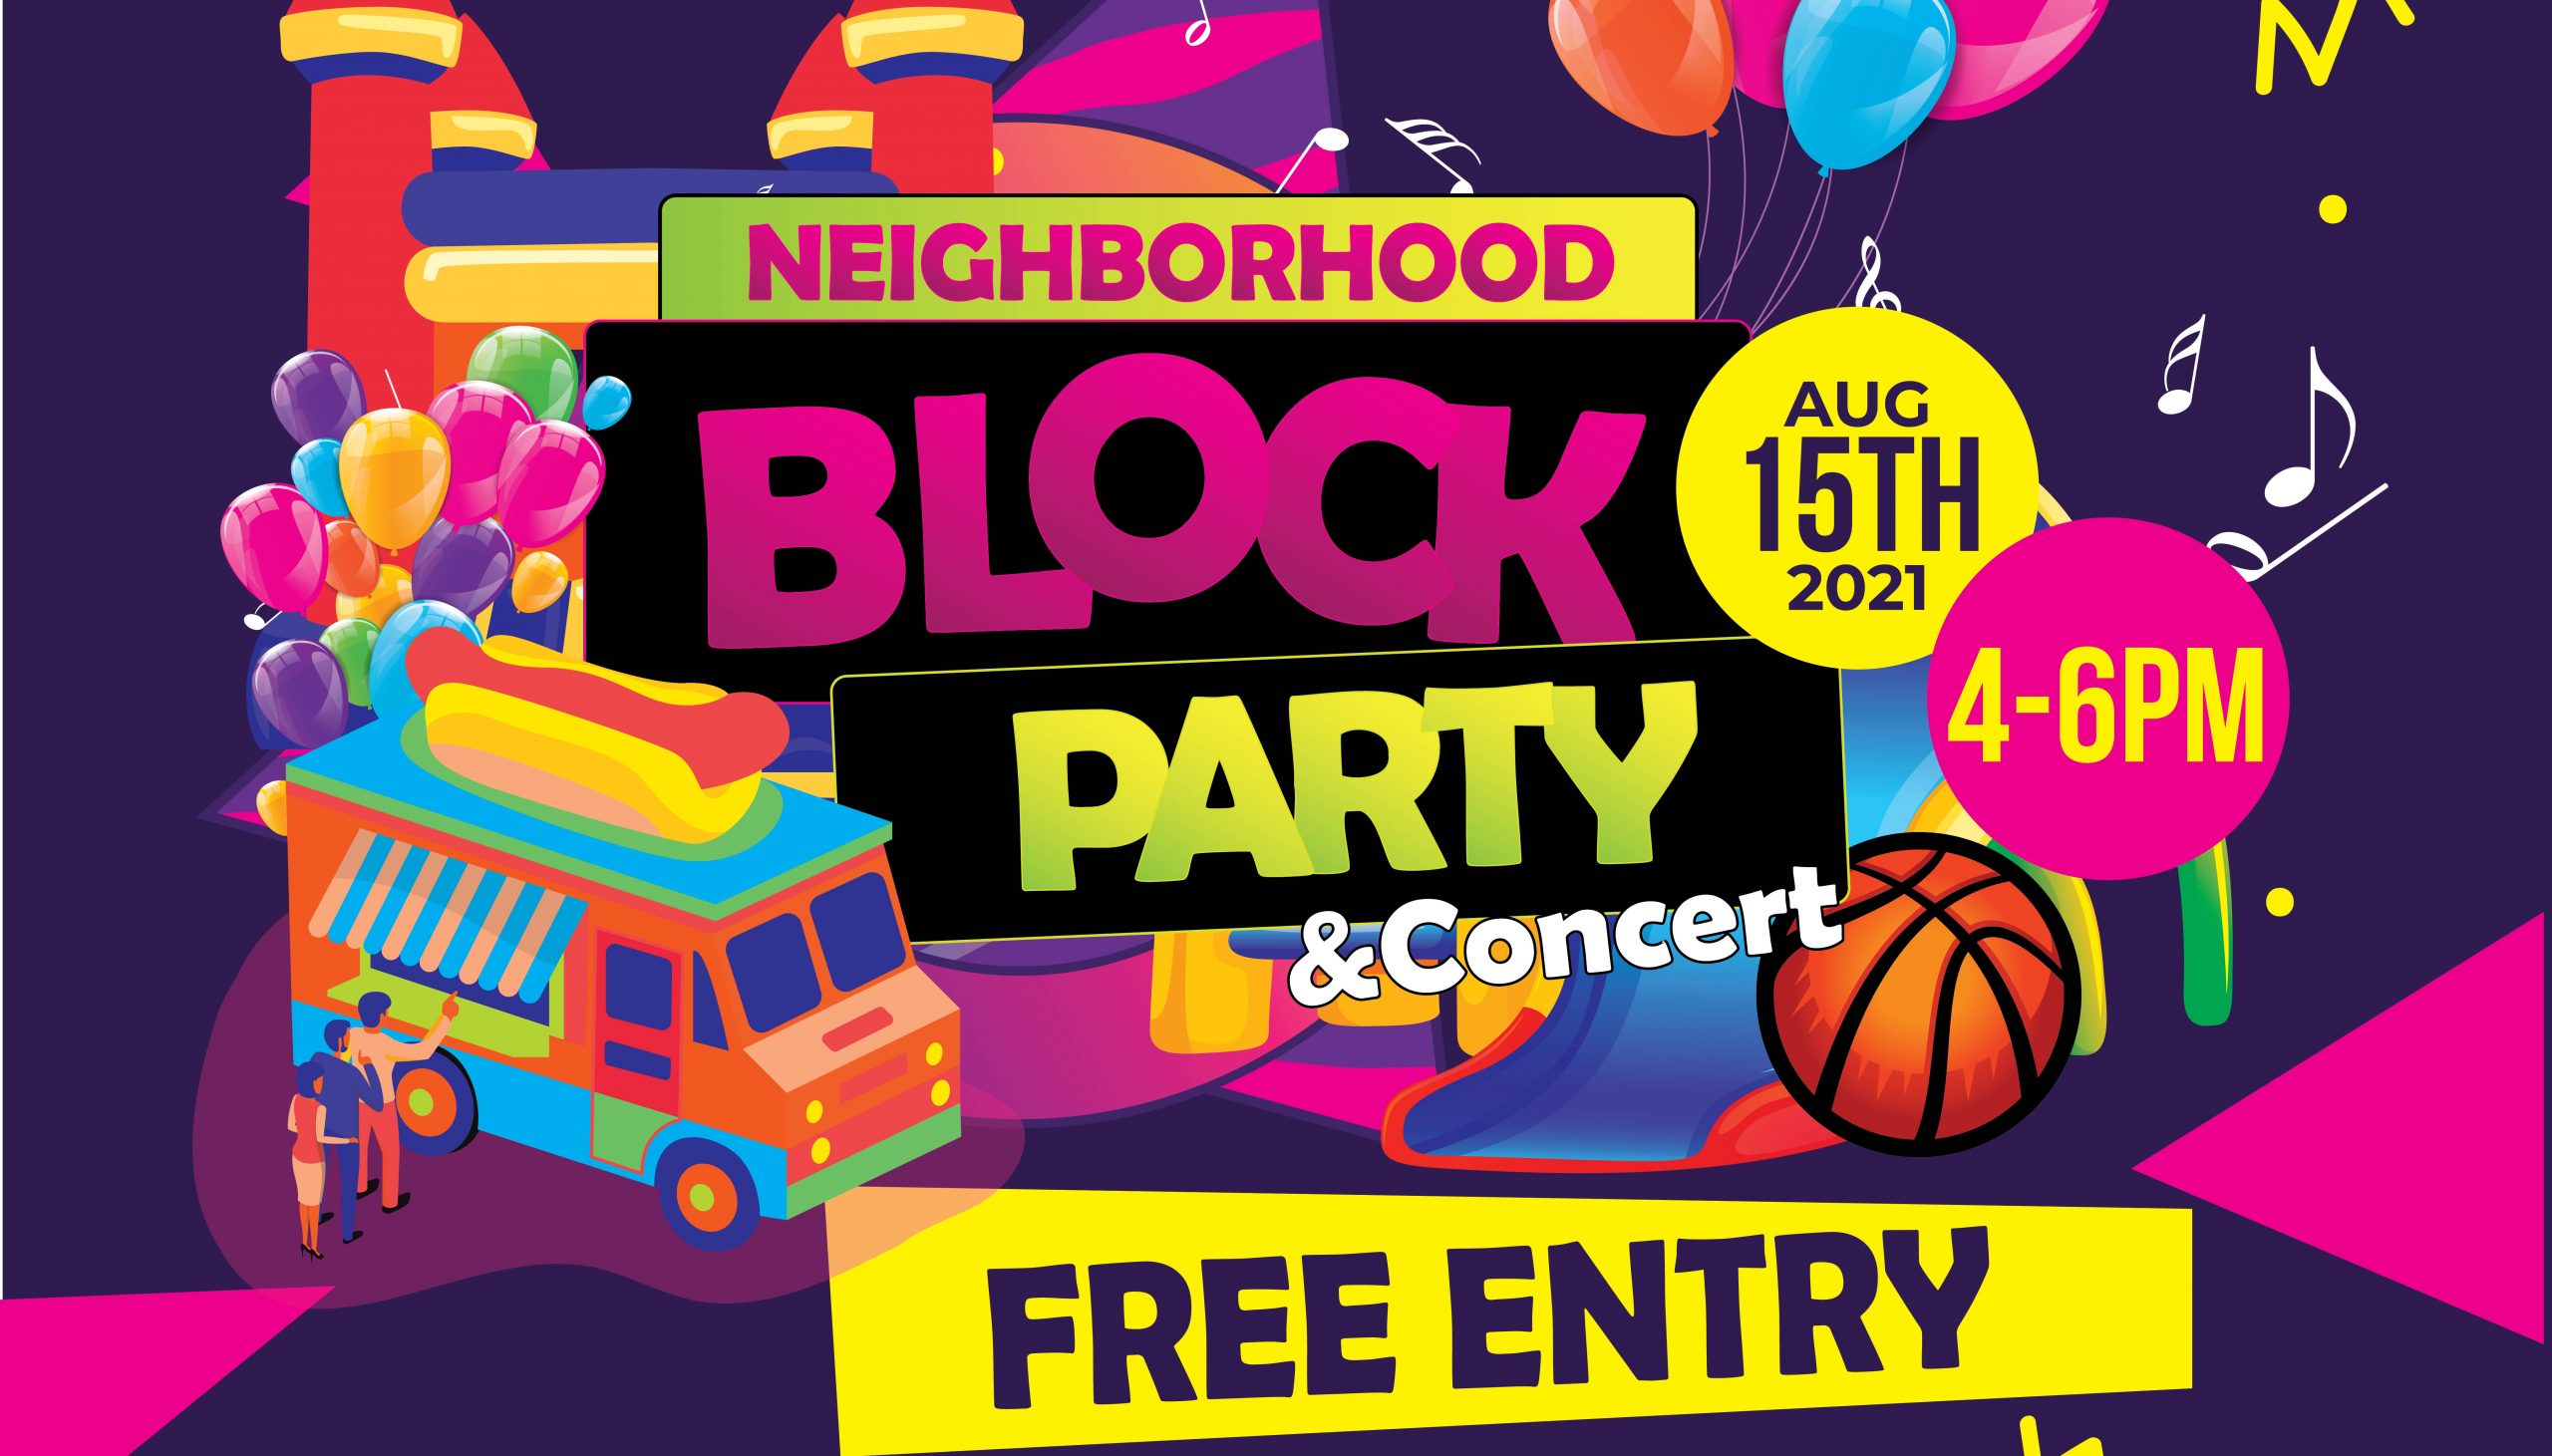 Neighborhood Block Party & Concert